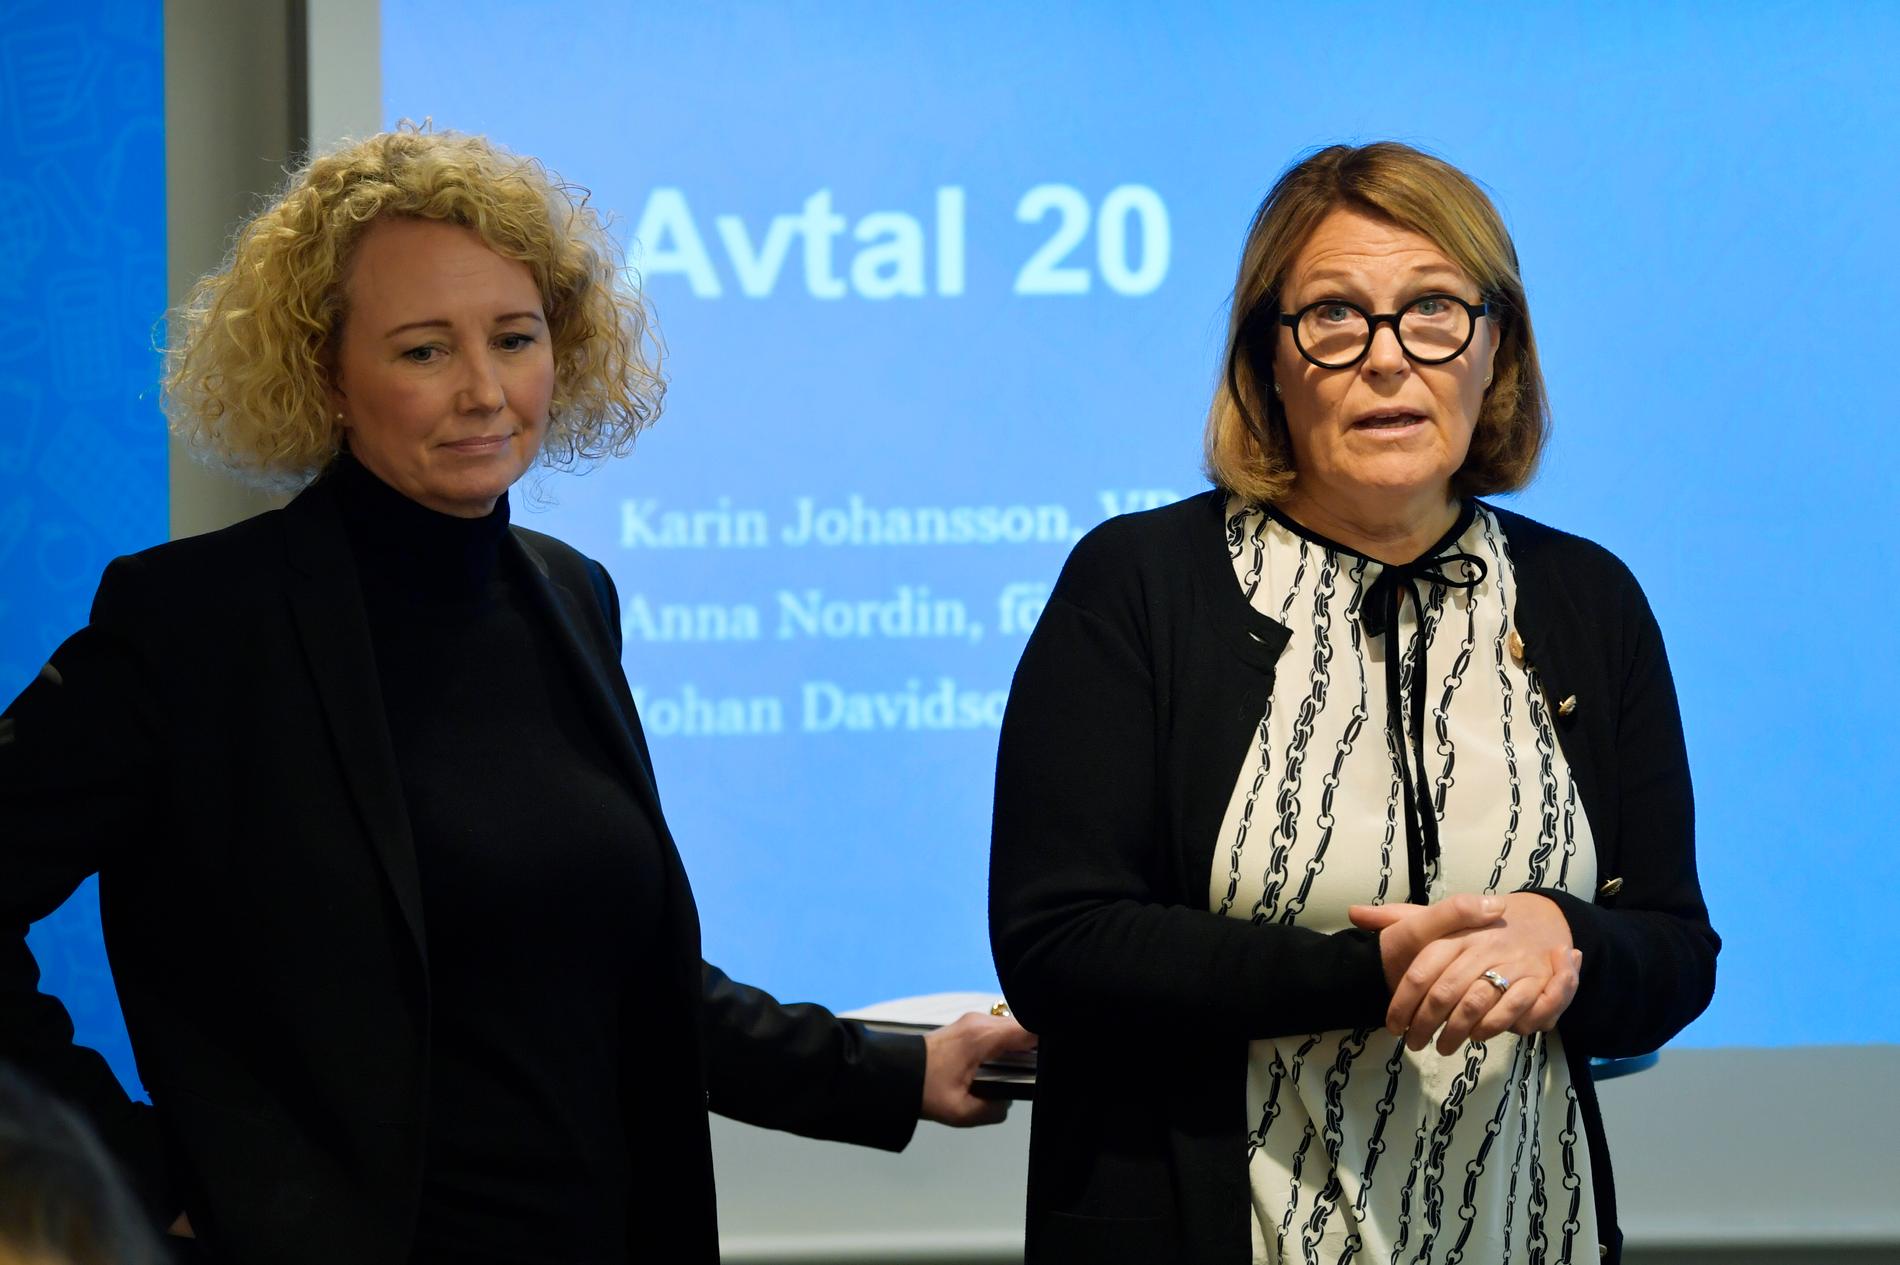 Svensk Handels förhandlingschef Anna Nordin och vd Karin Johansson presenterar kraven inför löneförhandlingarna med Handels.